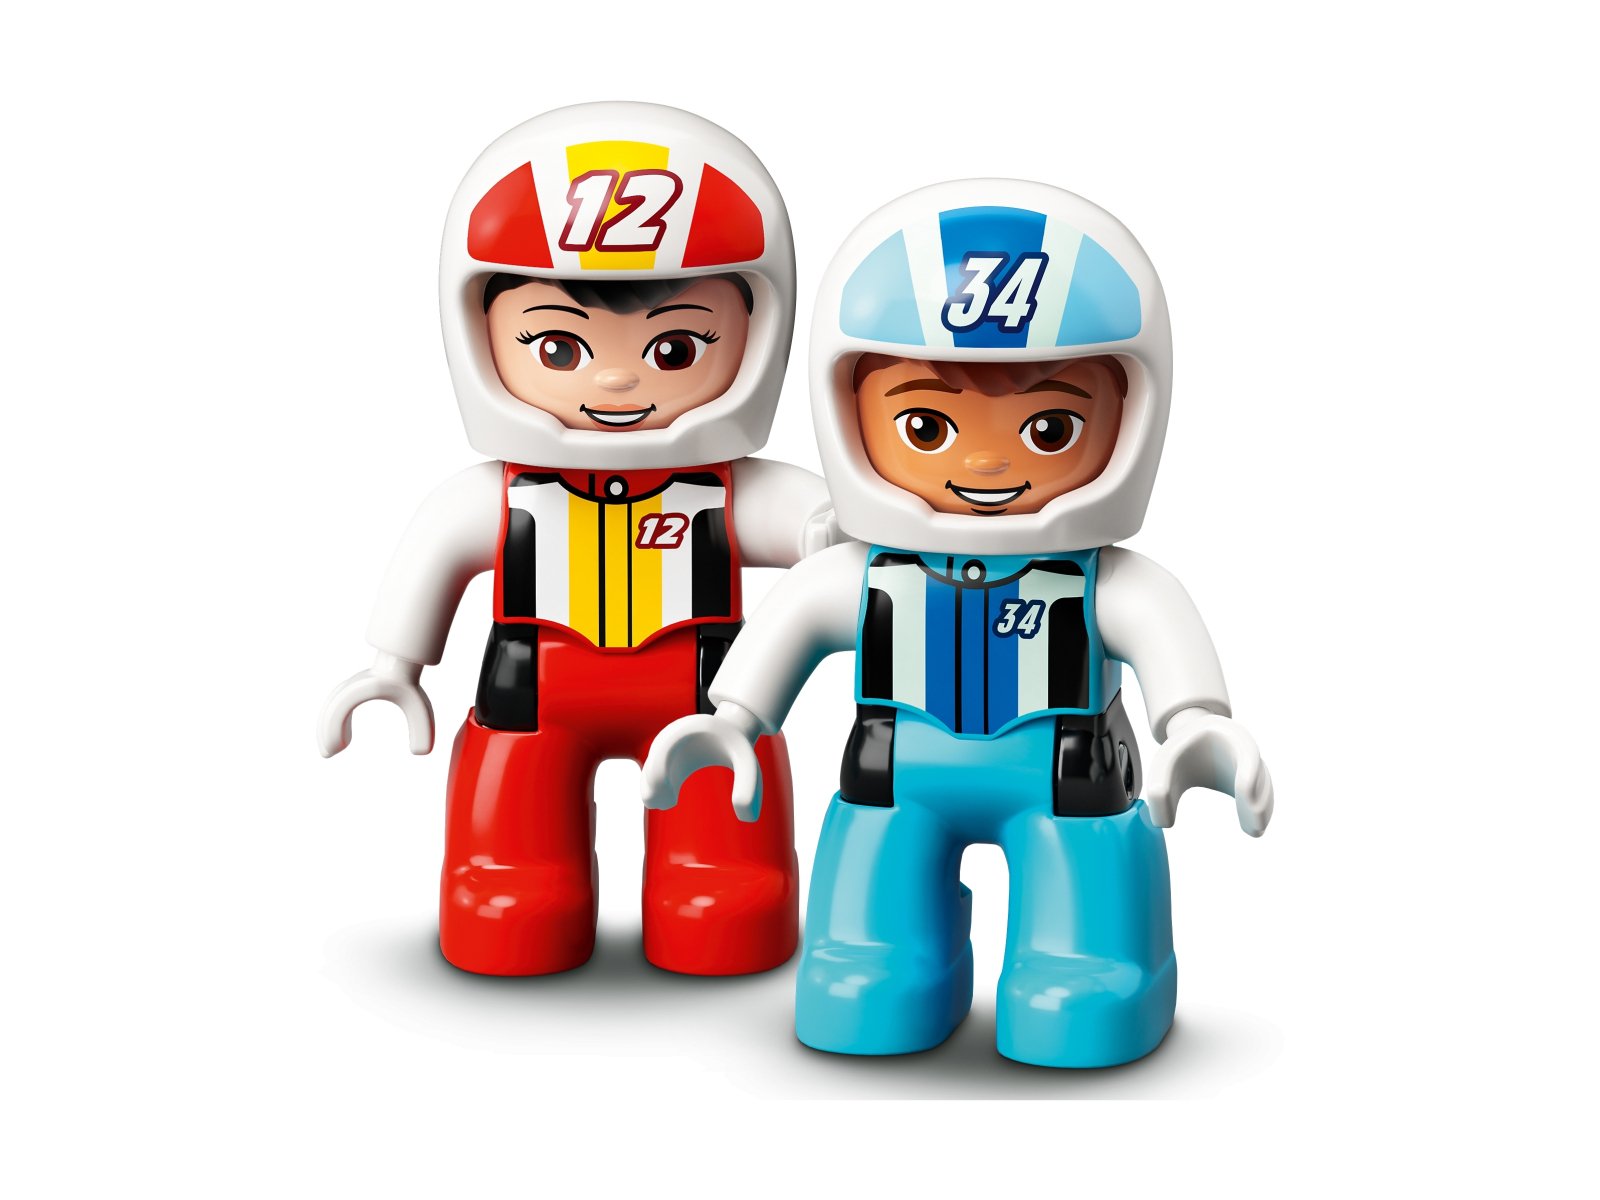 LEGO 10947 Duplo Samochody wyścigowe